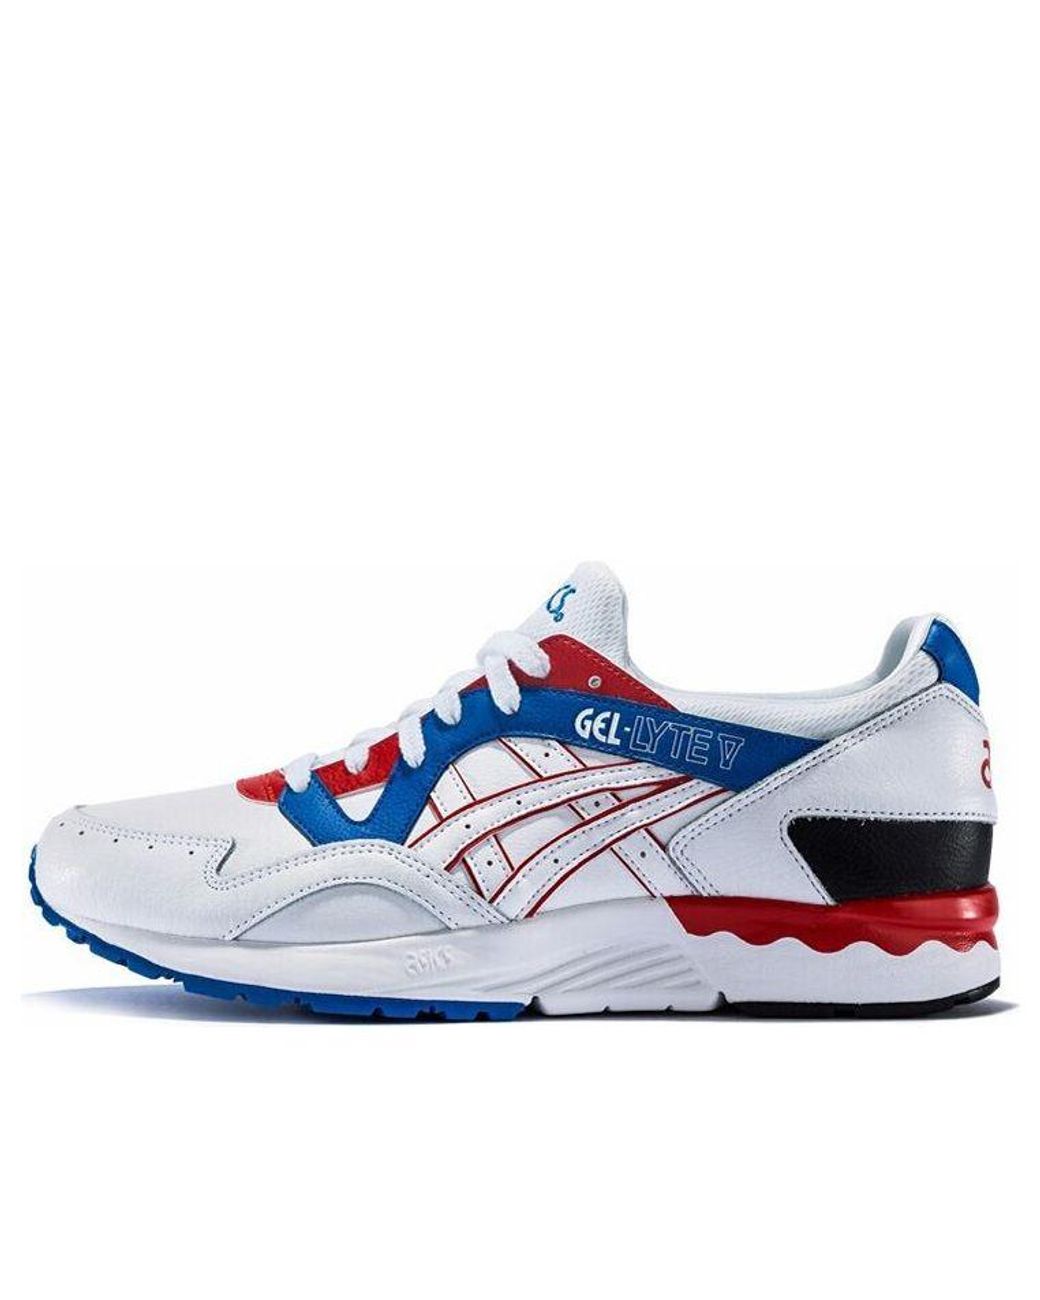 Asics Gel-lyte V Running Shoes White/blue/red for Men | Lyst